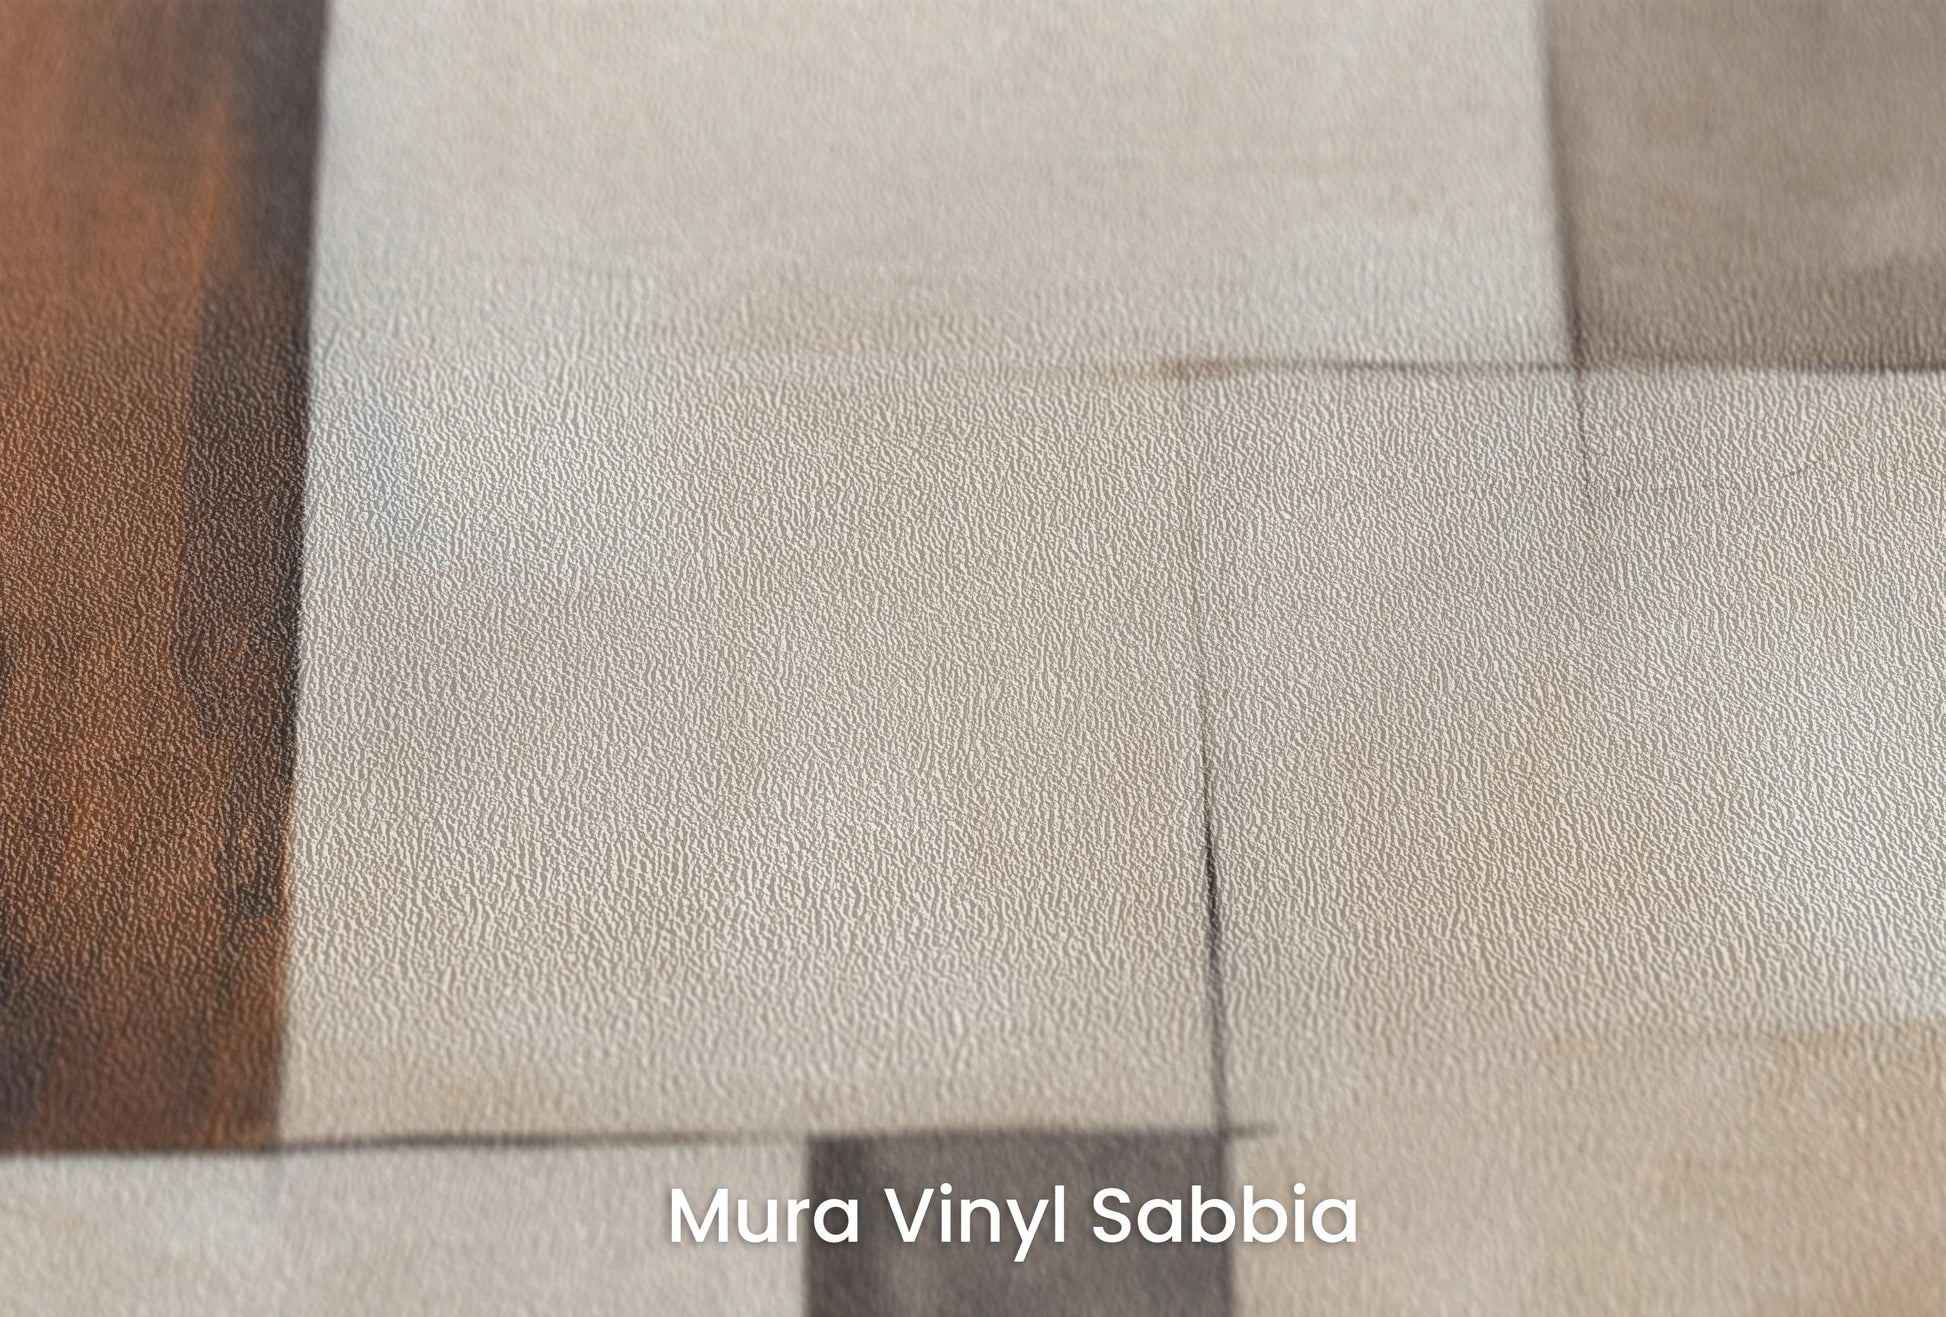 Zbliżenie na artystyczną fototapetę o nazwie Abstract Earth Tones na podłożu Mura Vinyl Sabbia struktura grubego ziarna piasku.